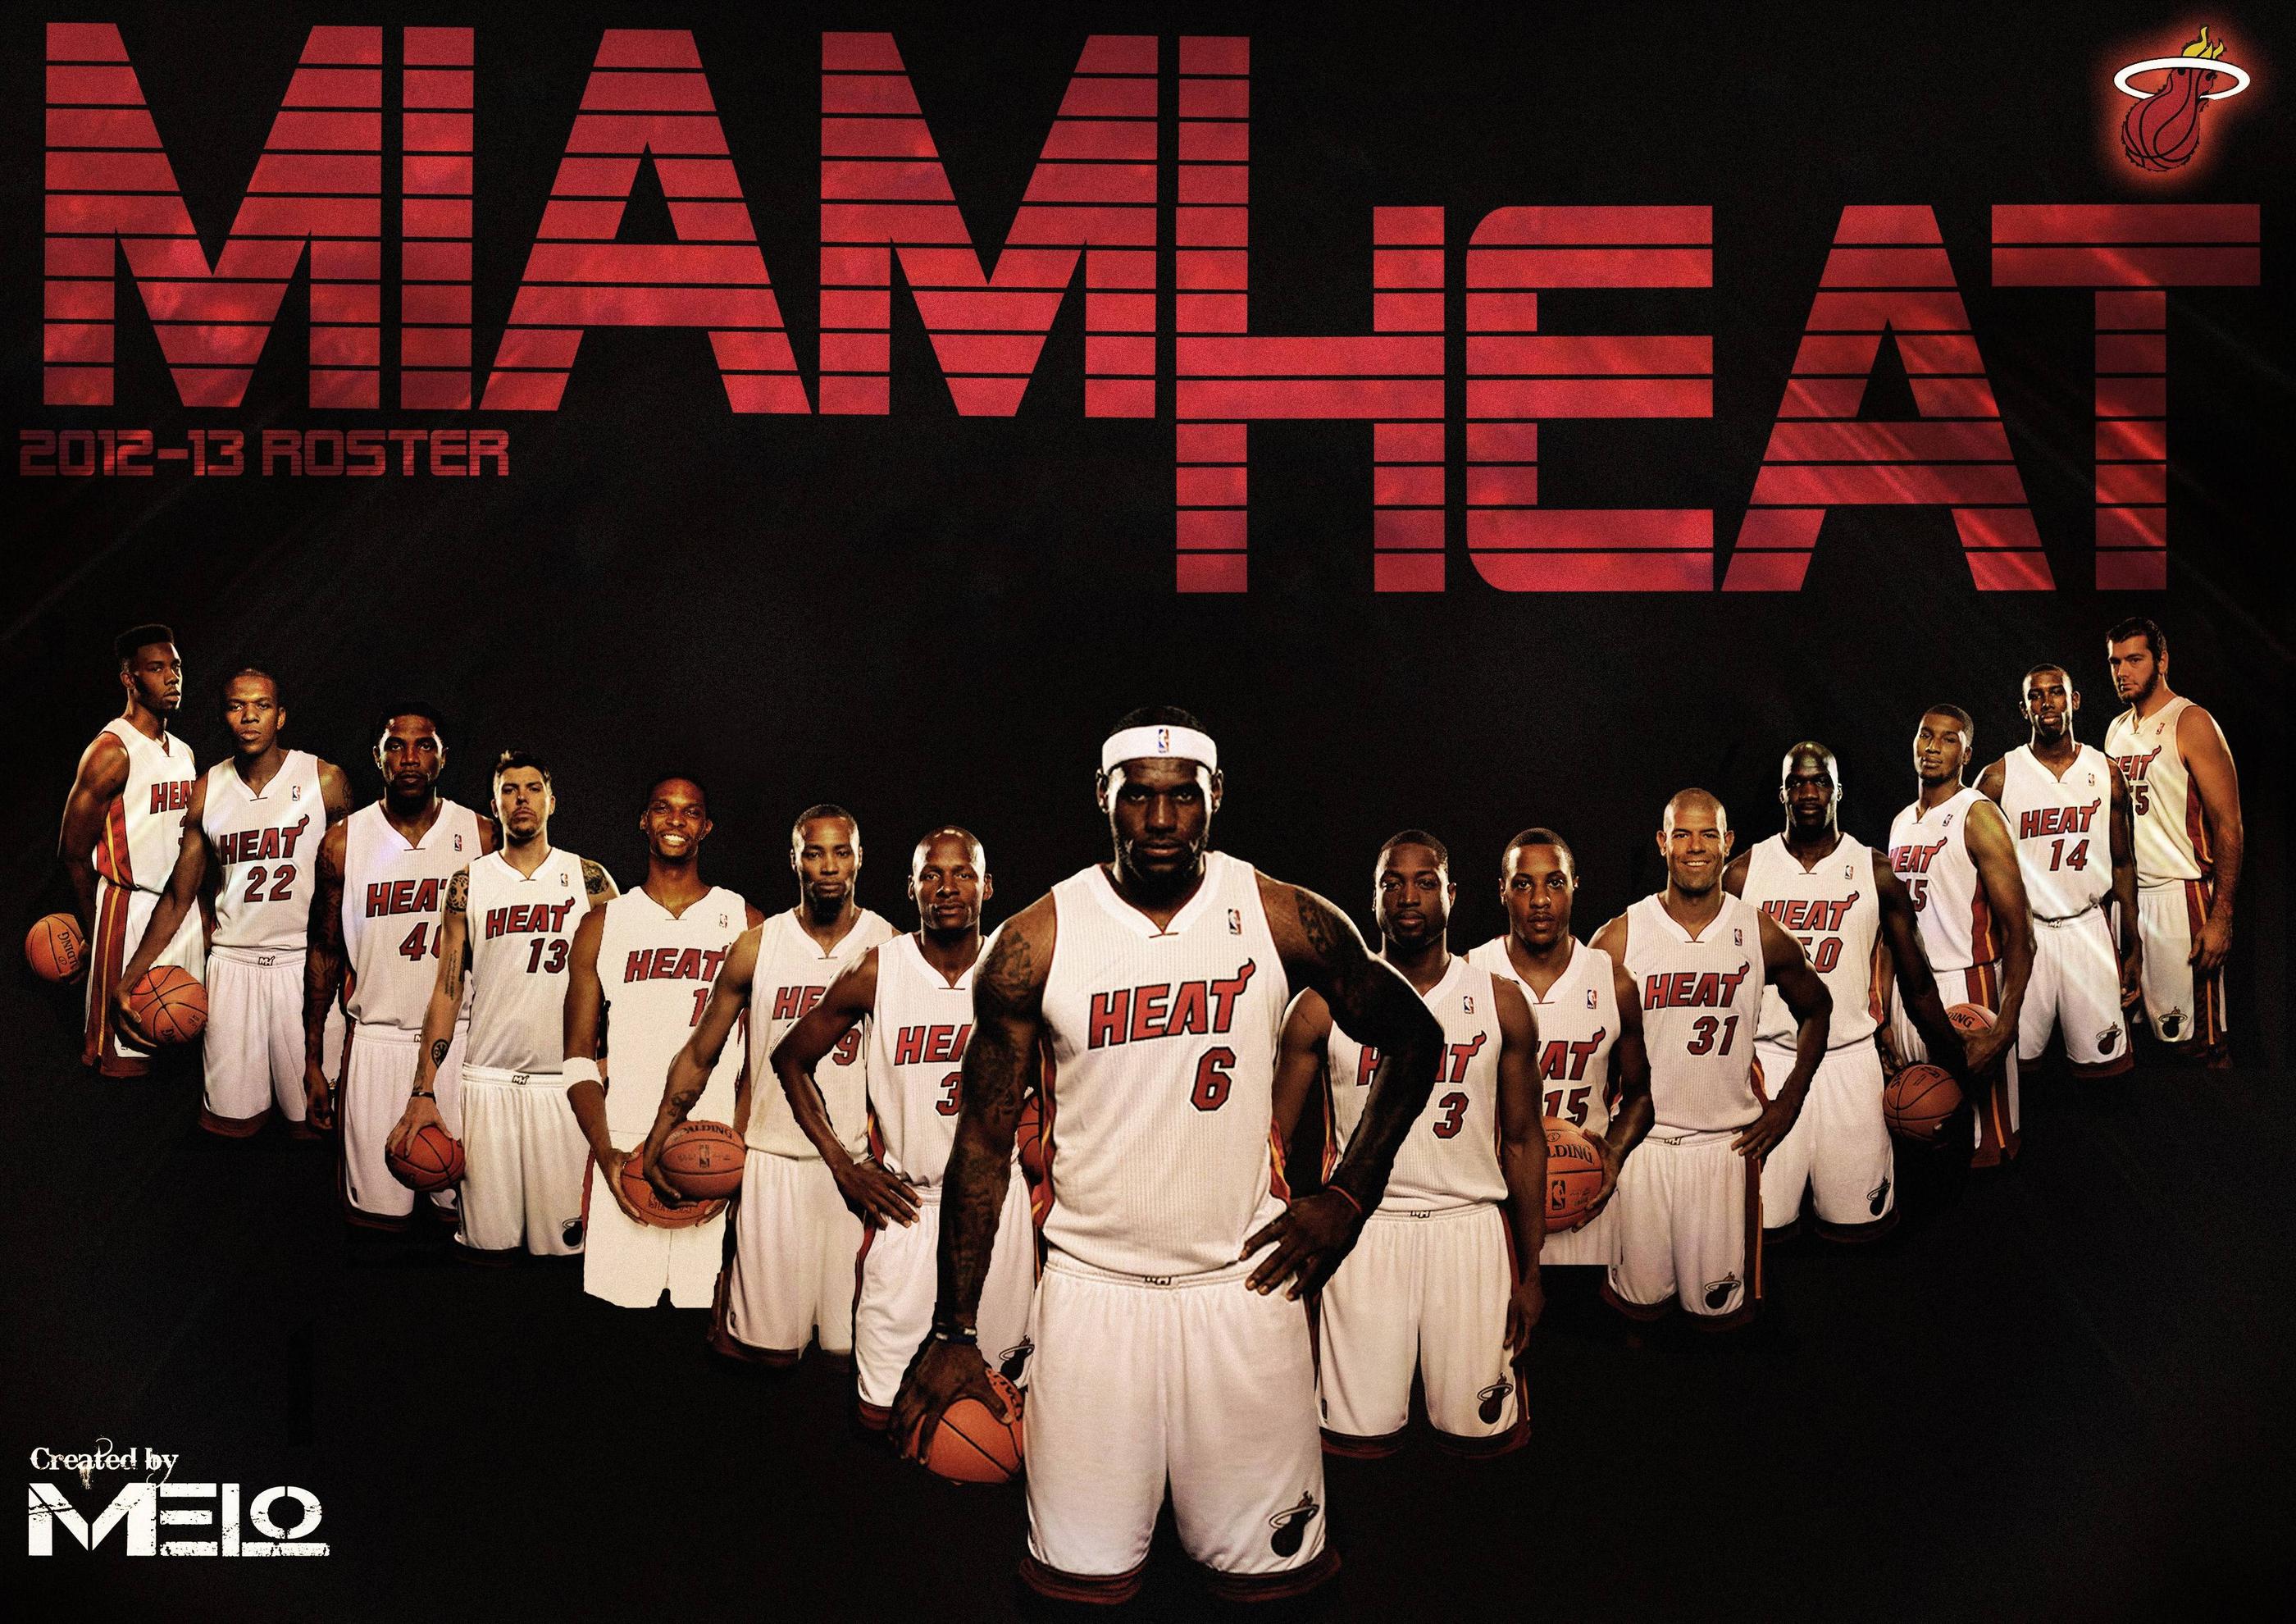 Miami Heat Wallpaper HD